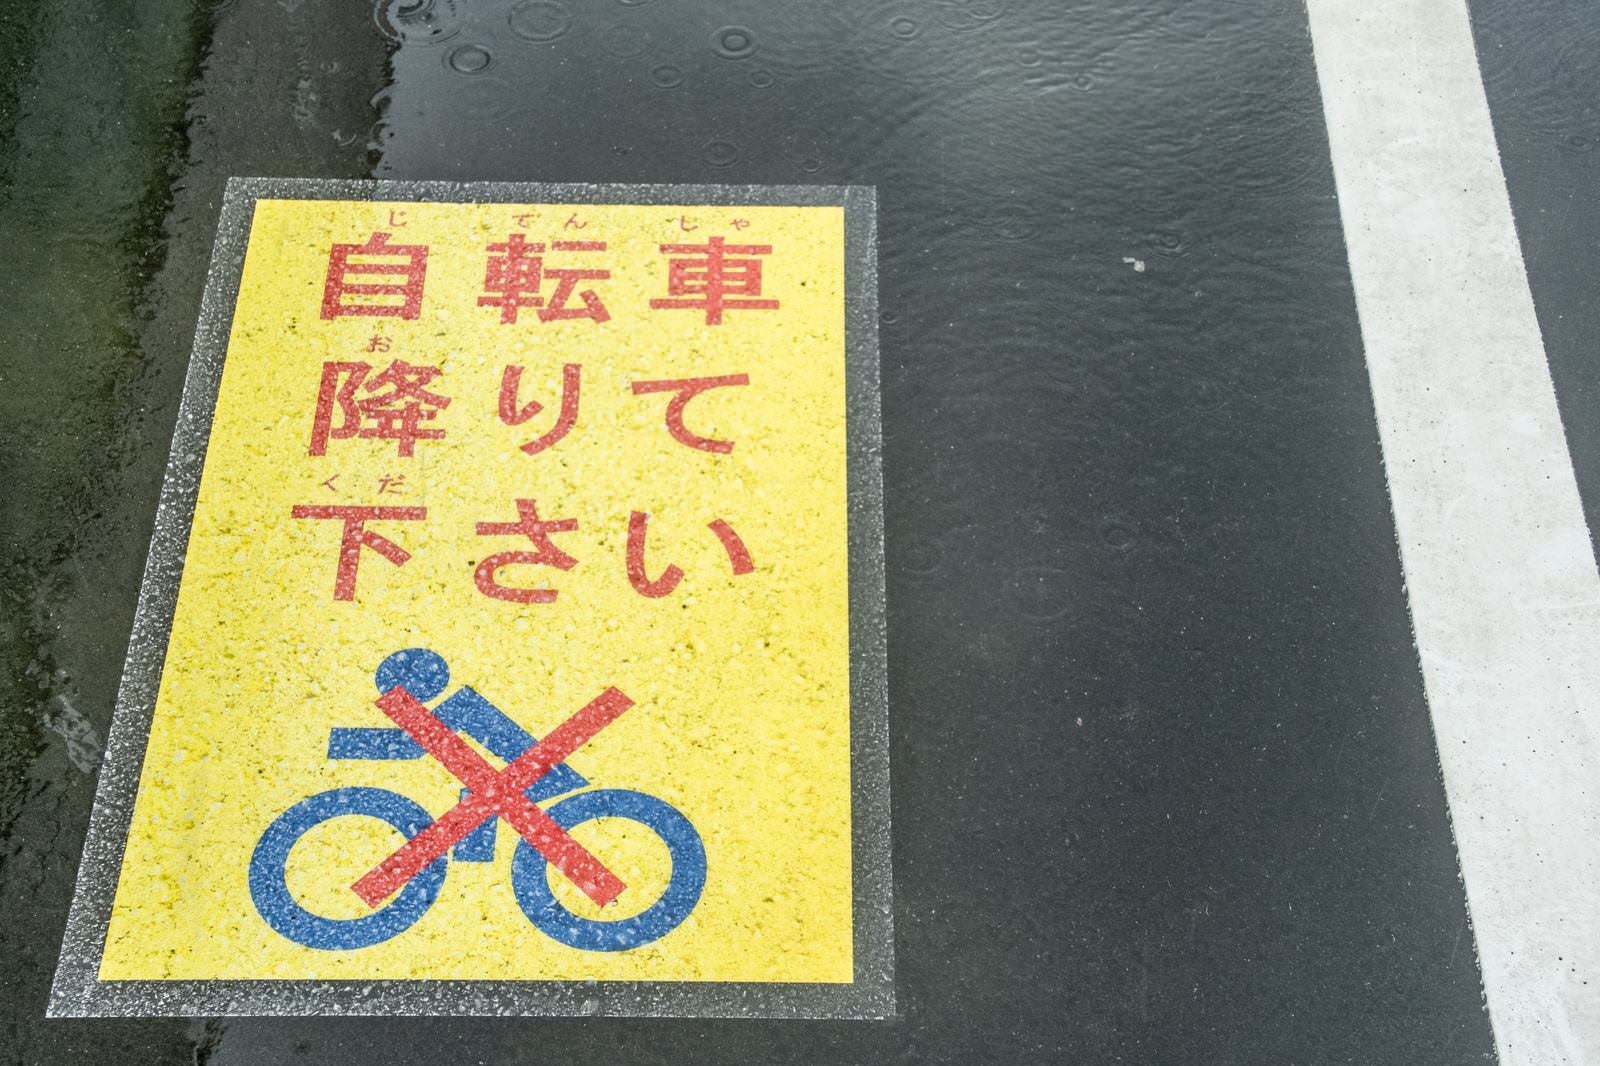 「自転車を降りてください」の写真